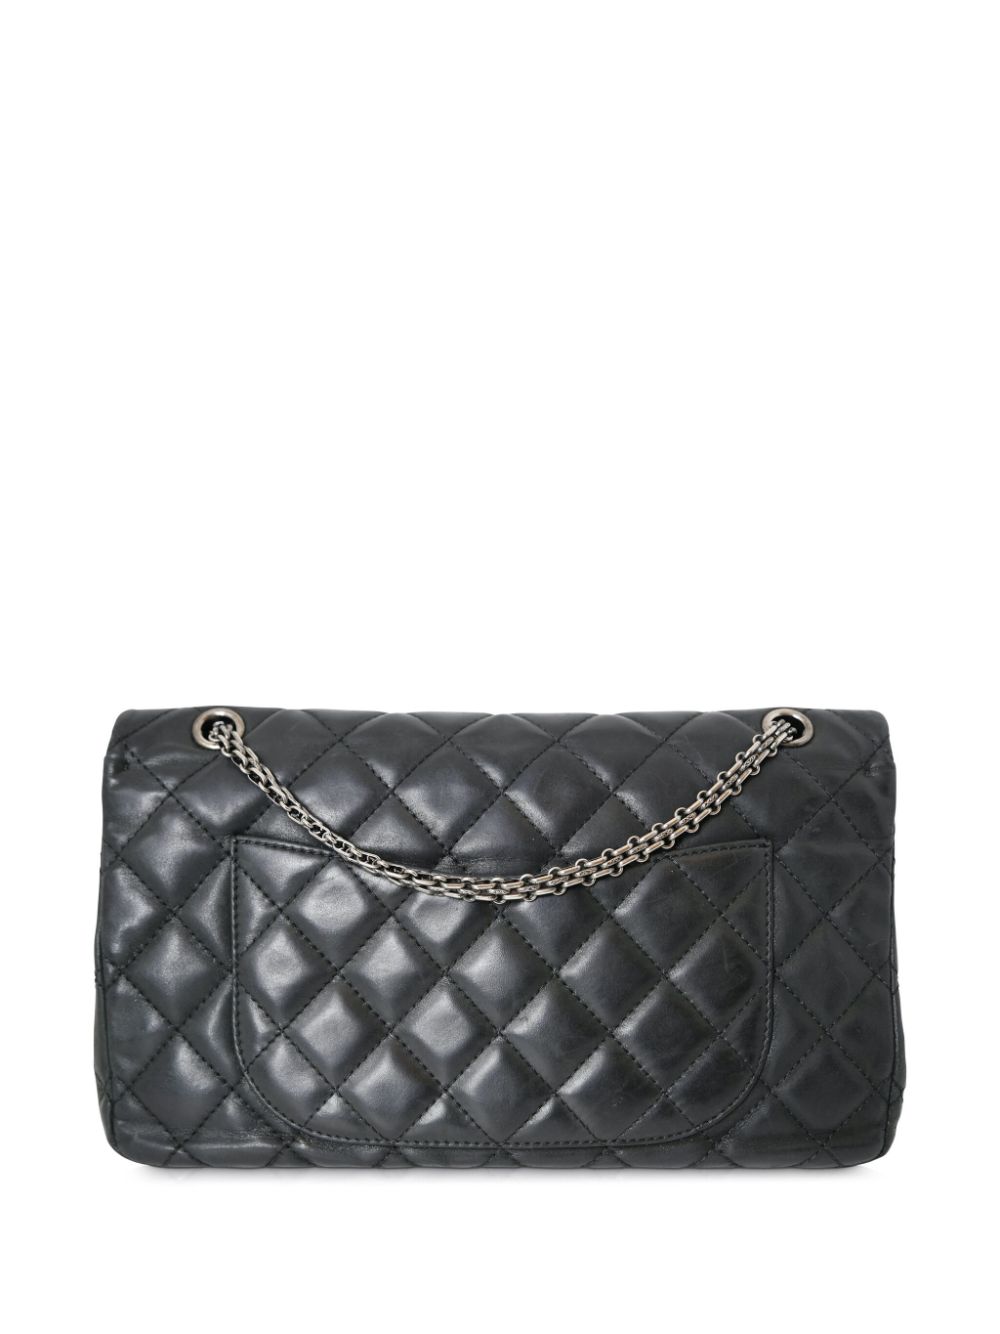 Pre-owned Chanel 2.55 Reissue Shoulder Bag In Black